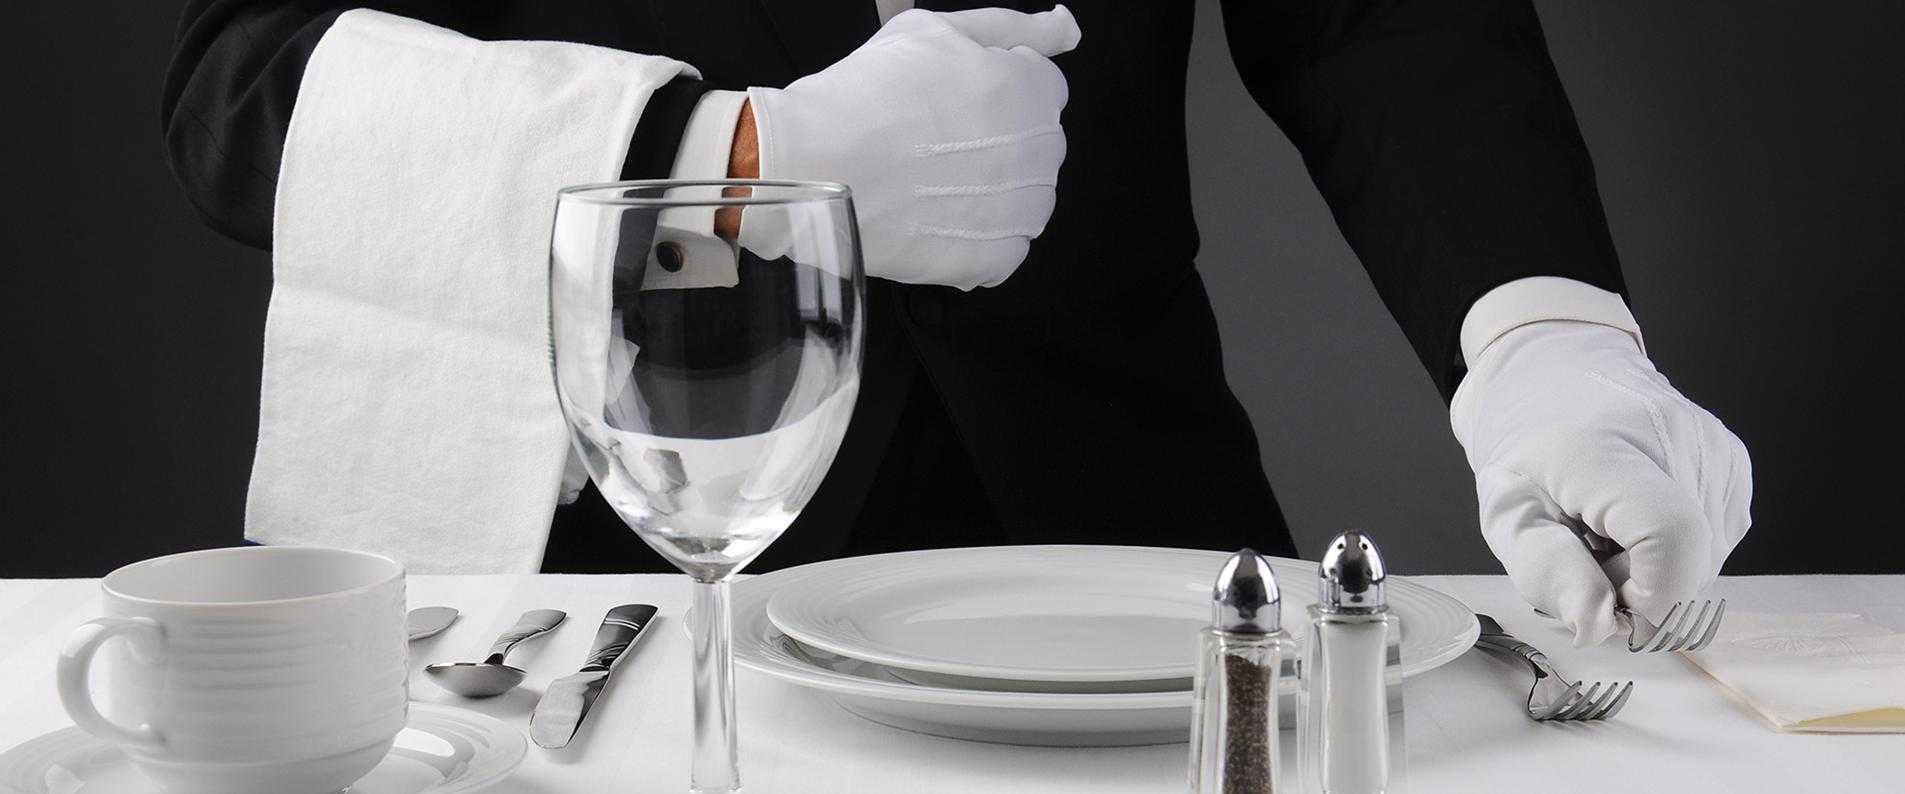 Ресторанный этикет - как правильно вести себя в ресторане
ресторанный этикет - как правильно вести себя в ресторане